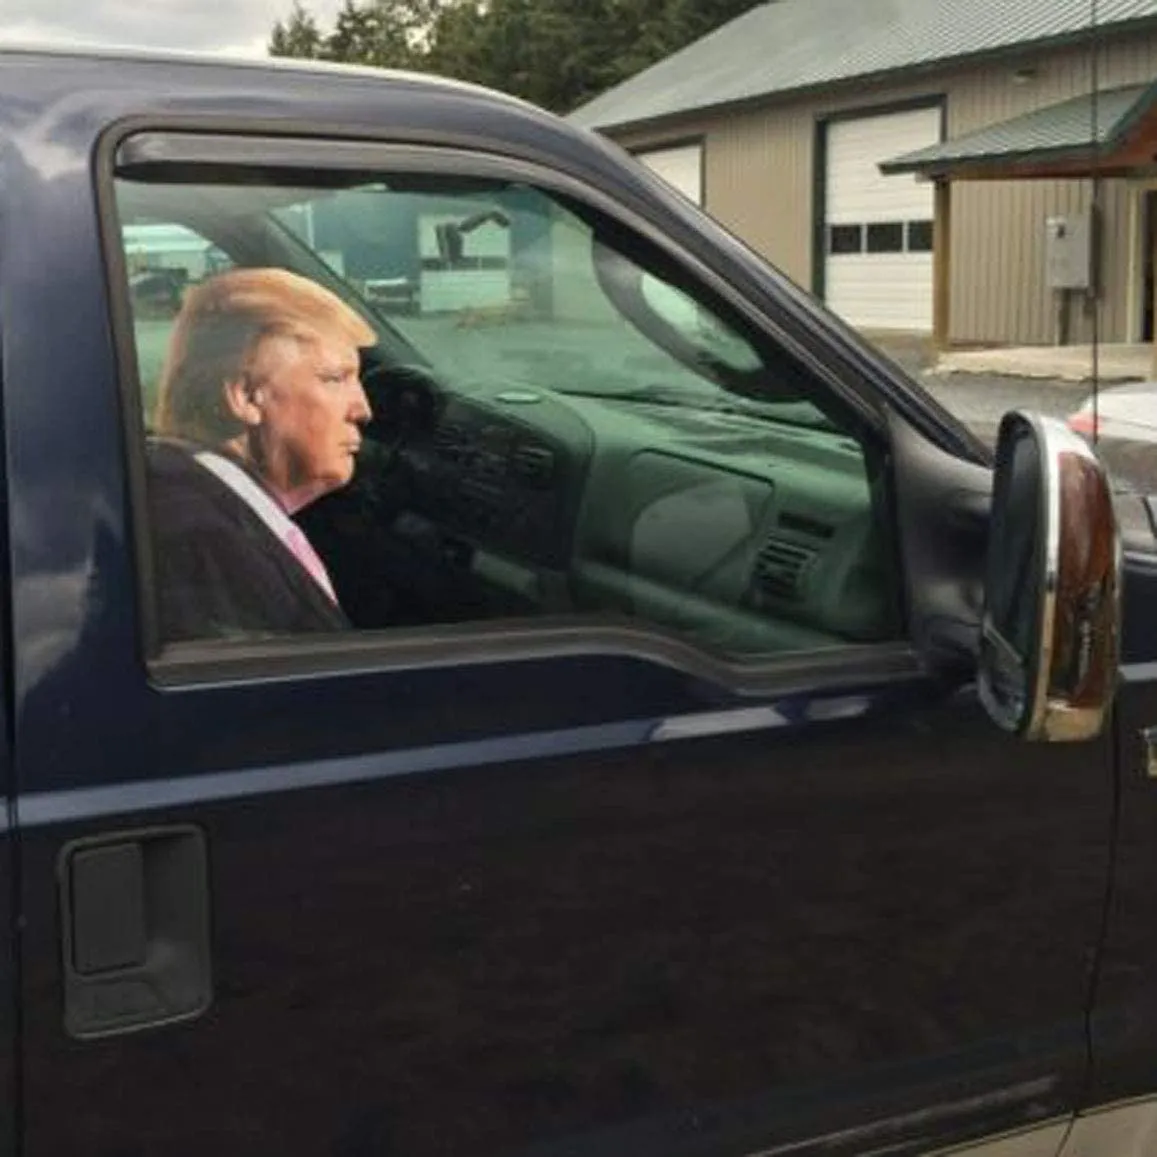 TOGOD Trump 2020 VOITURE DE VOITURE DE VOITURE DE VOISINE DE VOISINE CLING RIDER Fenêtre Décalque (pour le passager / à droite)